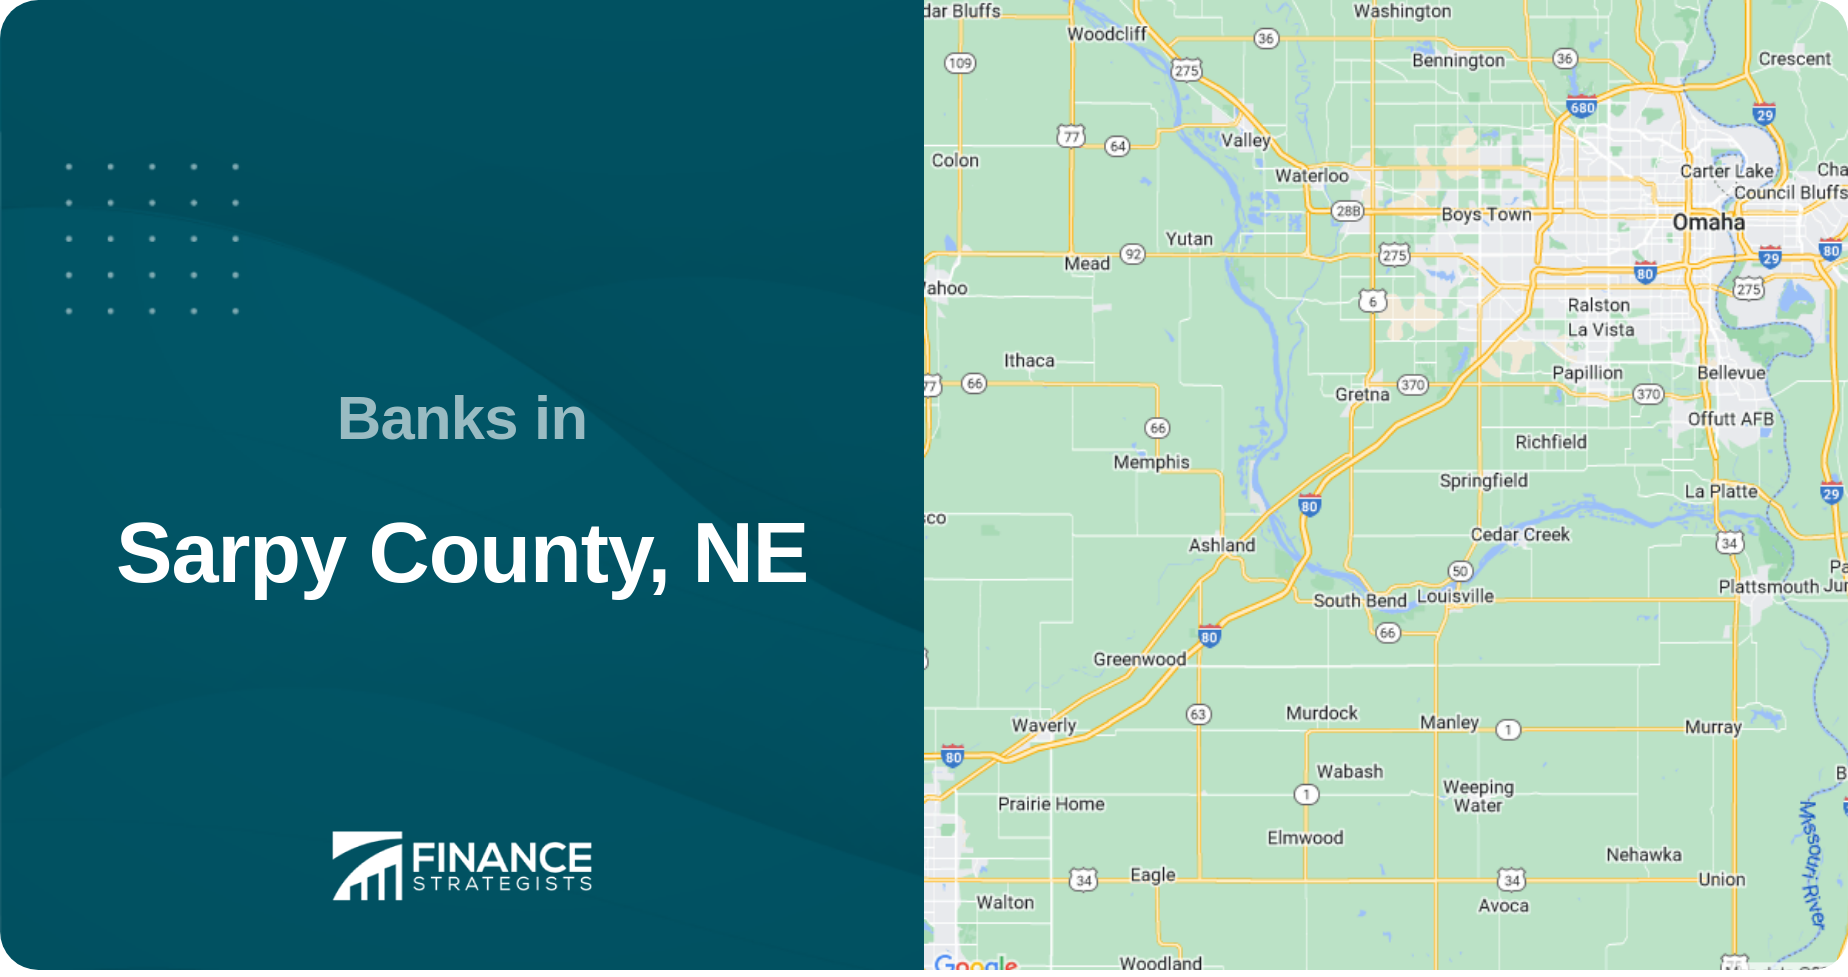 Banks in Sarpy County, NE